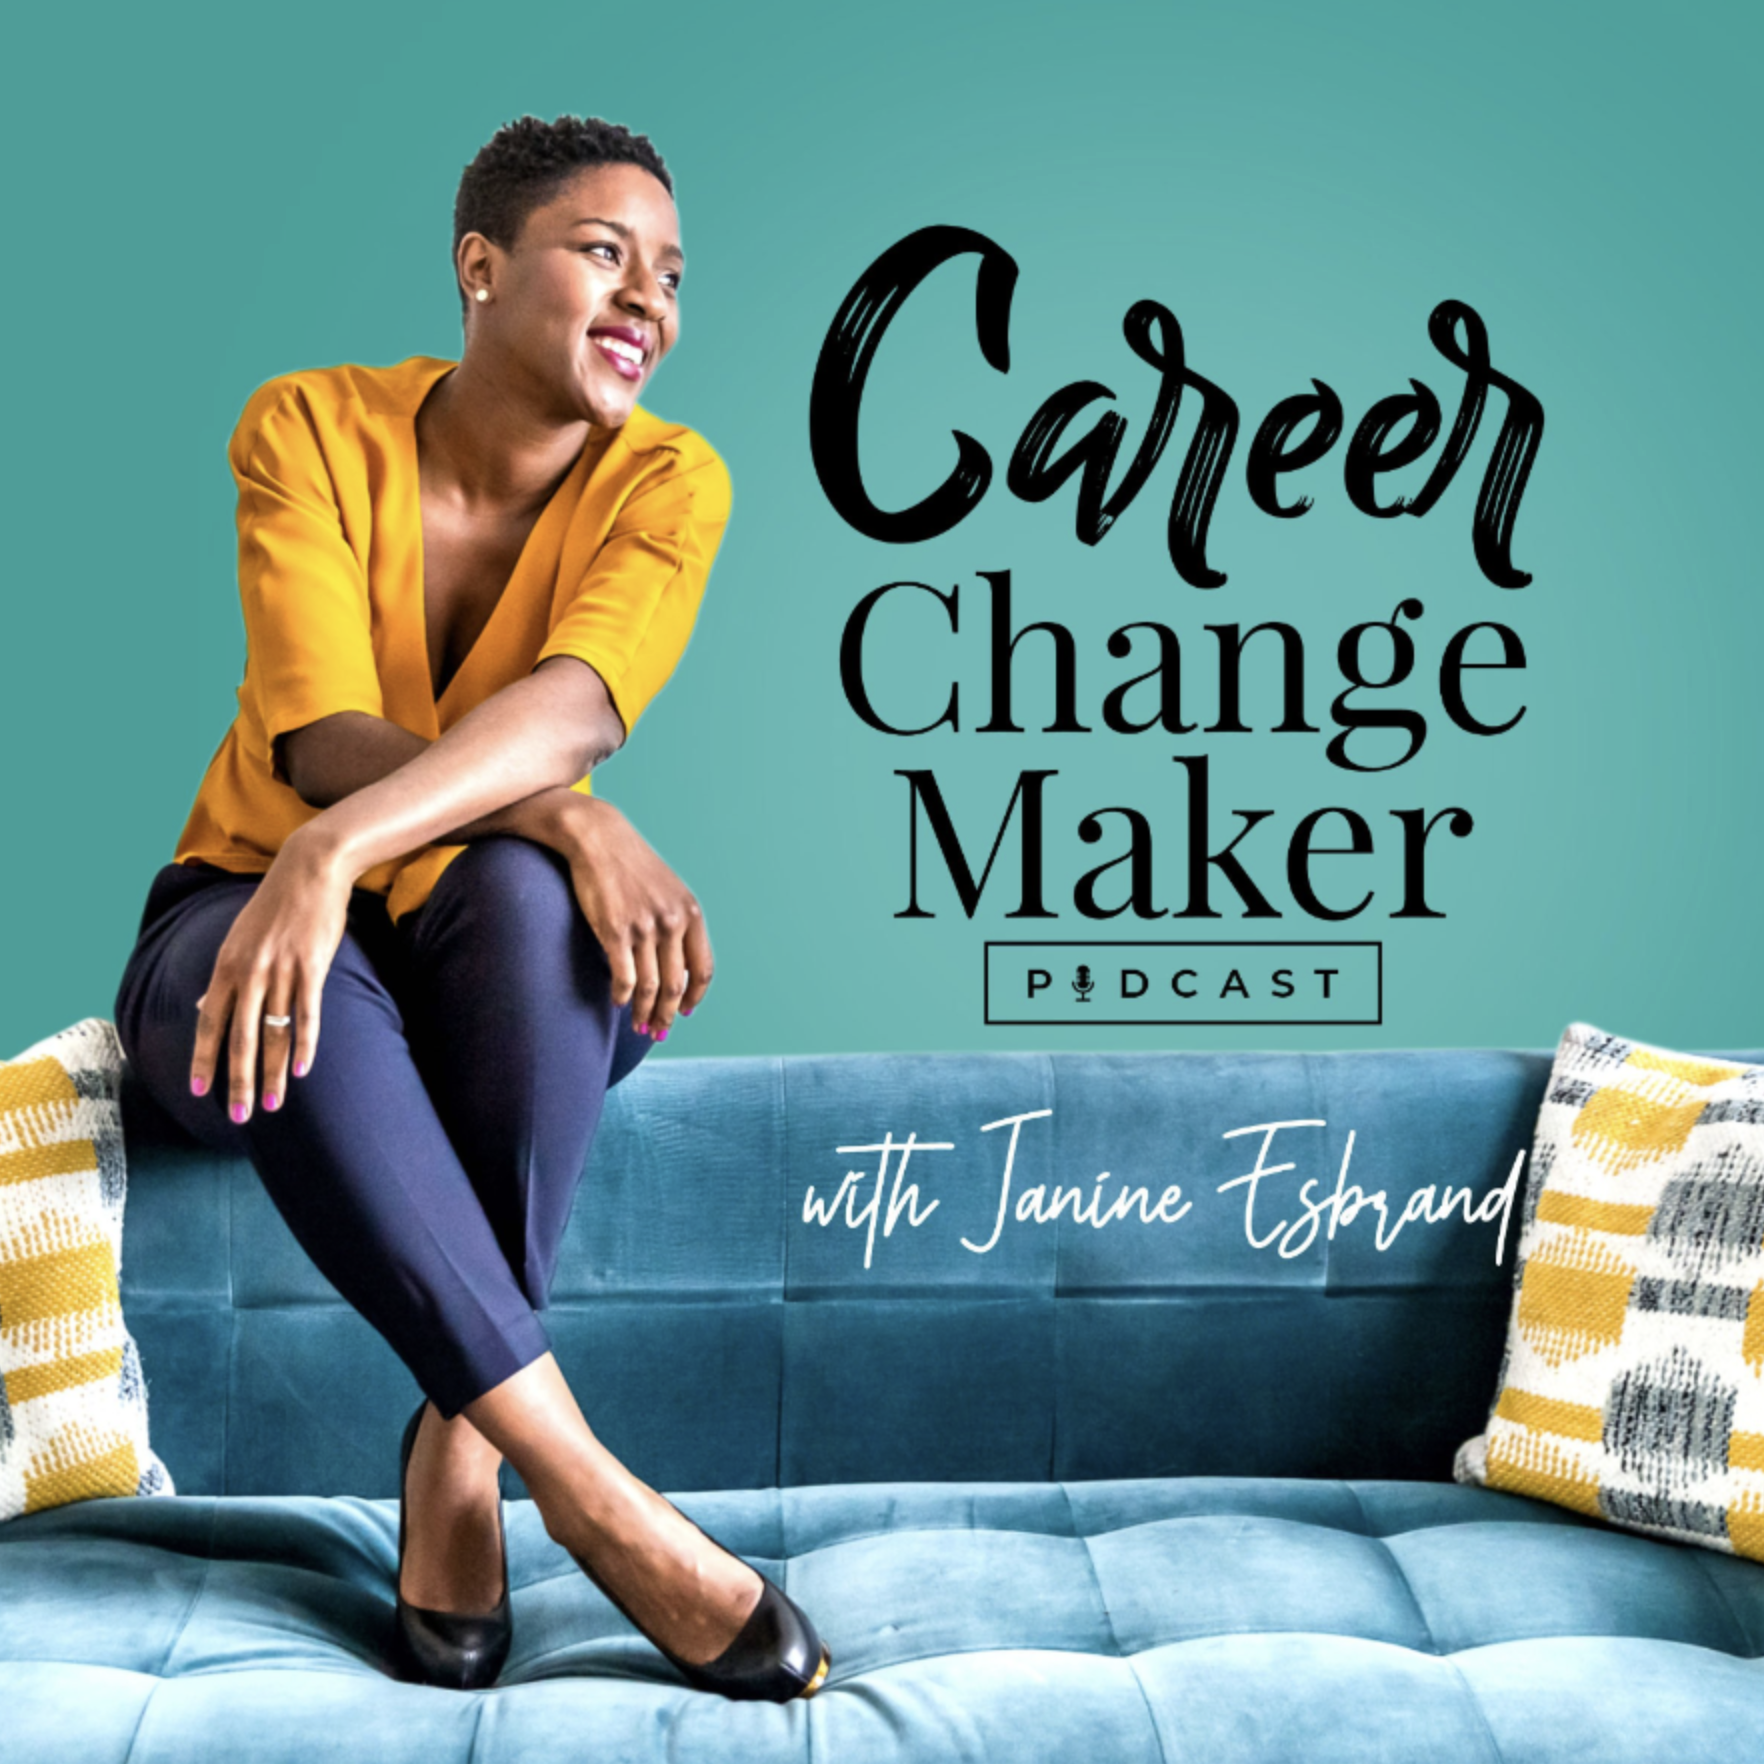 career_change_maker_podcast.png